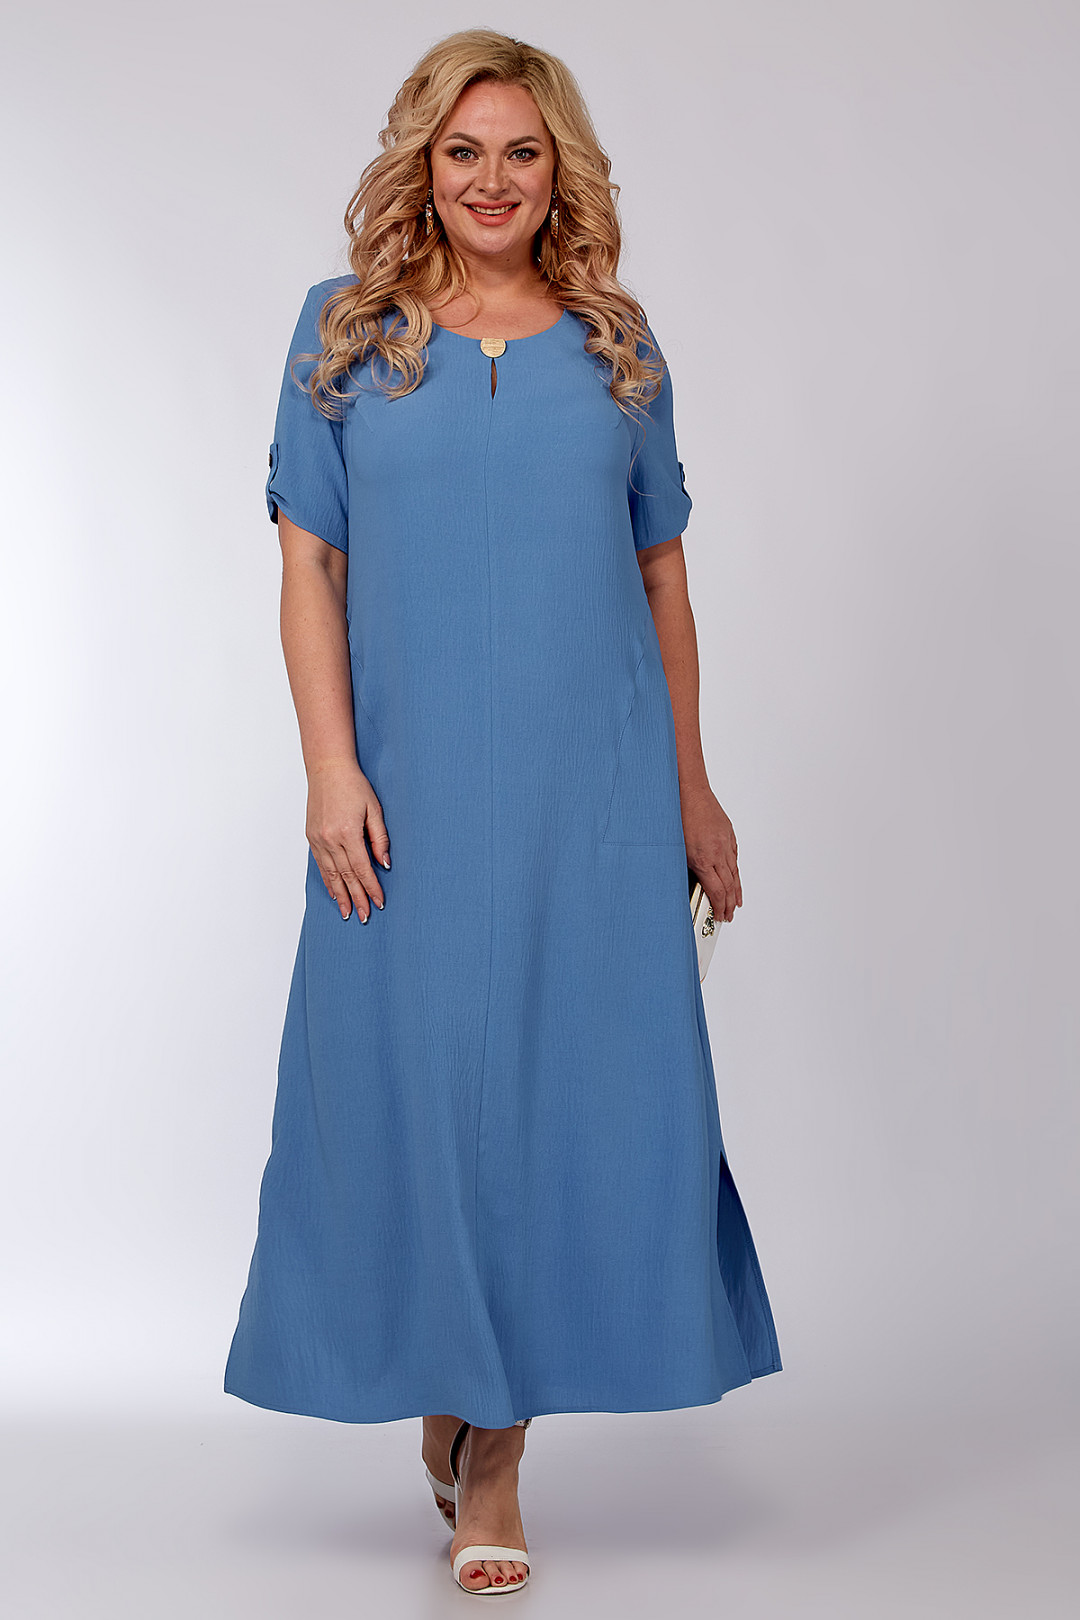 Платье ALGRANDA (Новелла Шарм) A3885-2-2